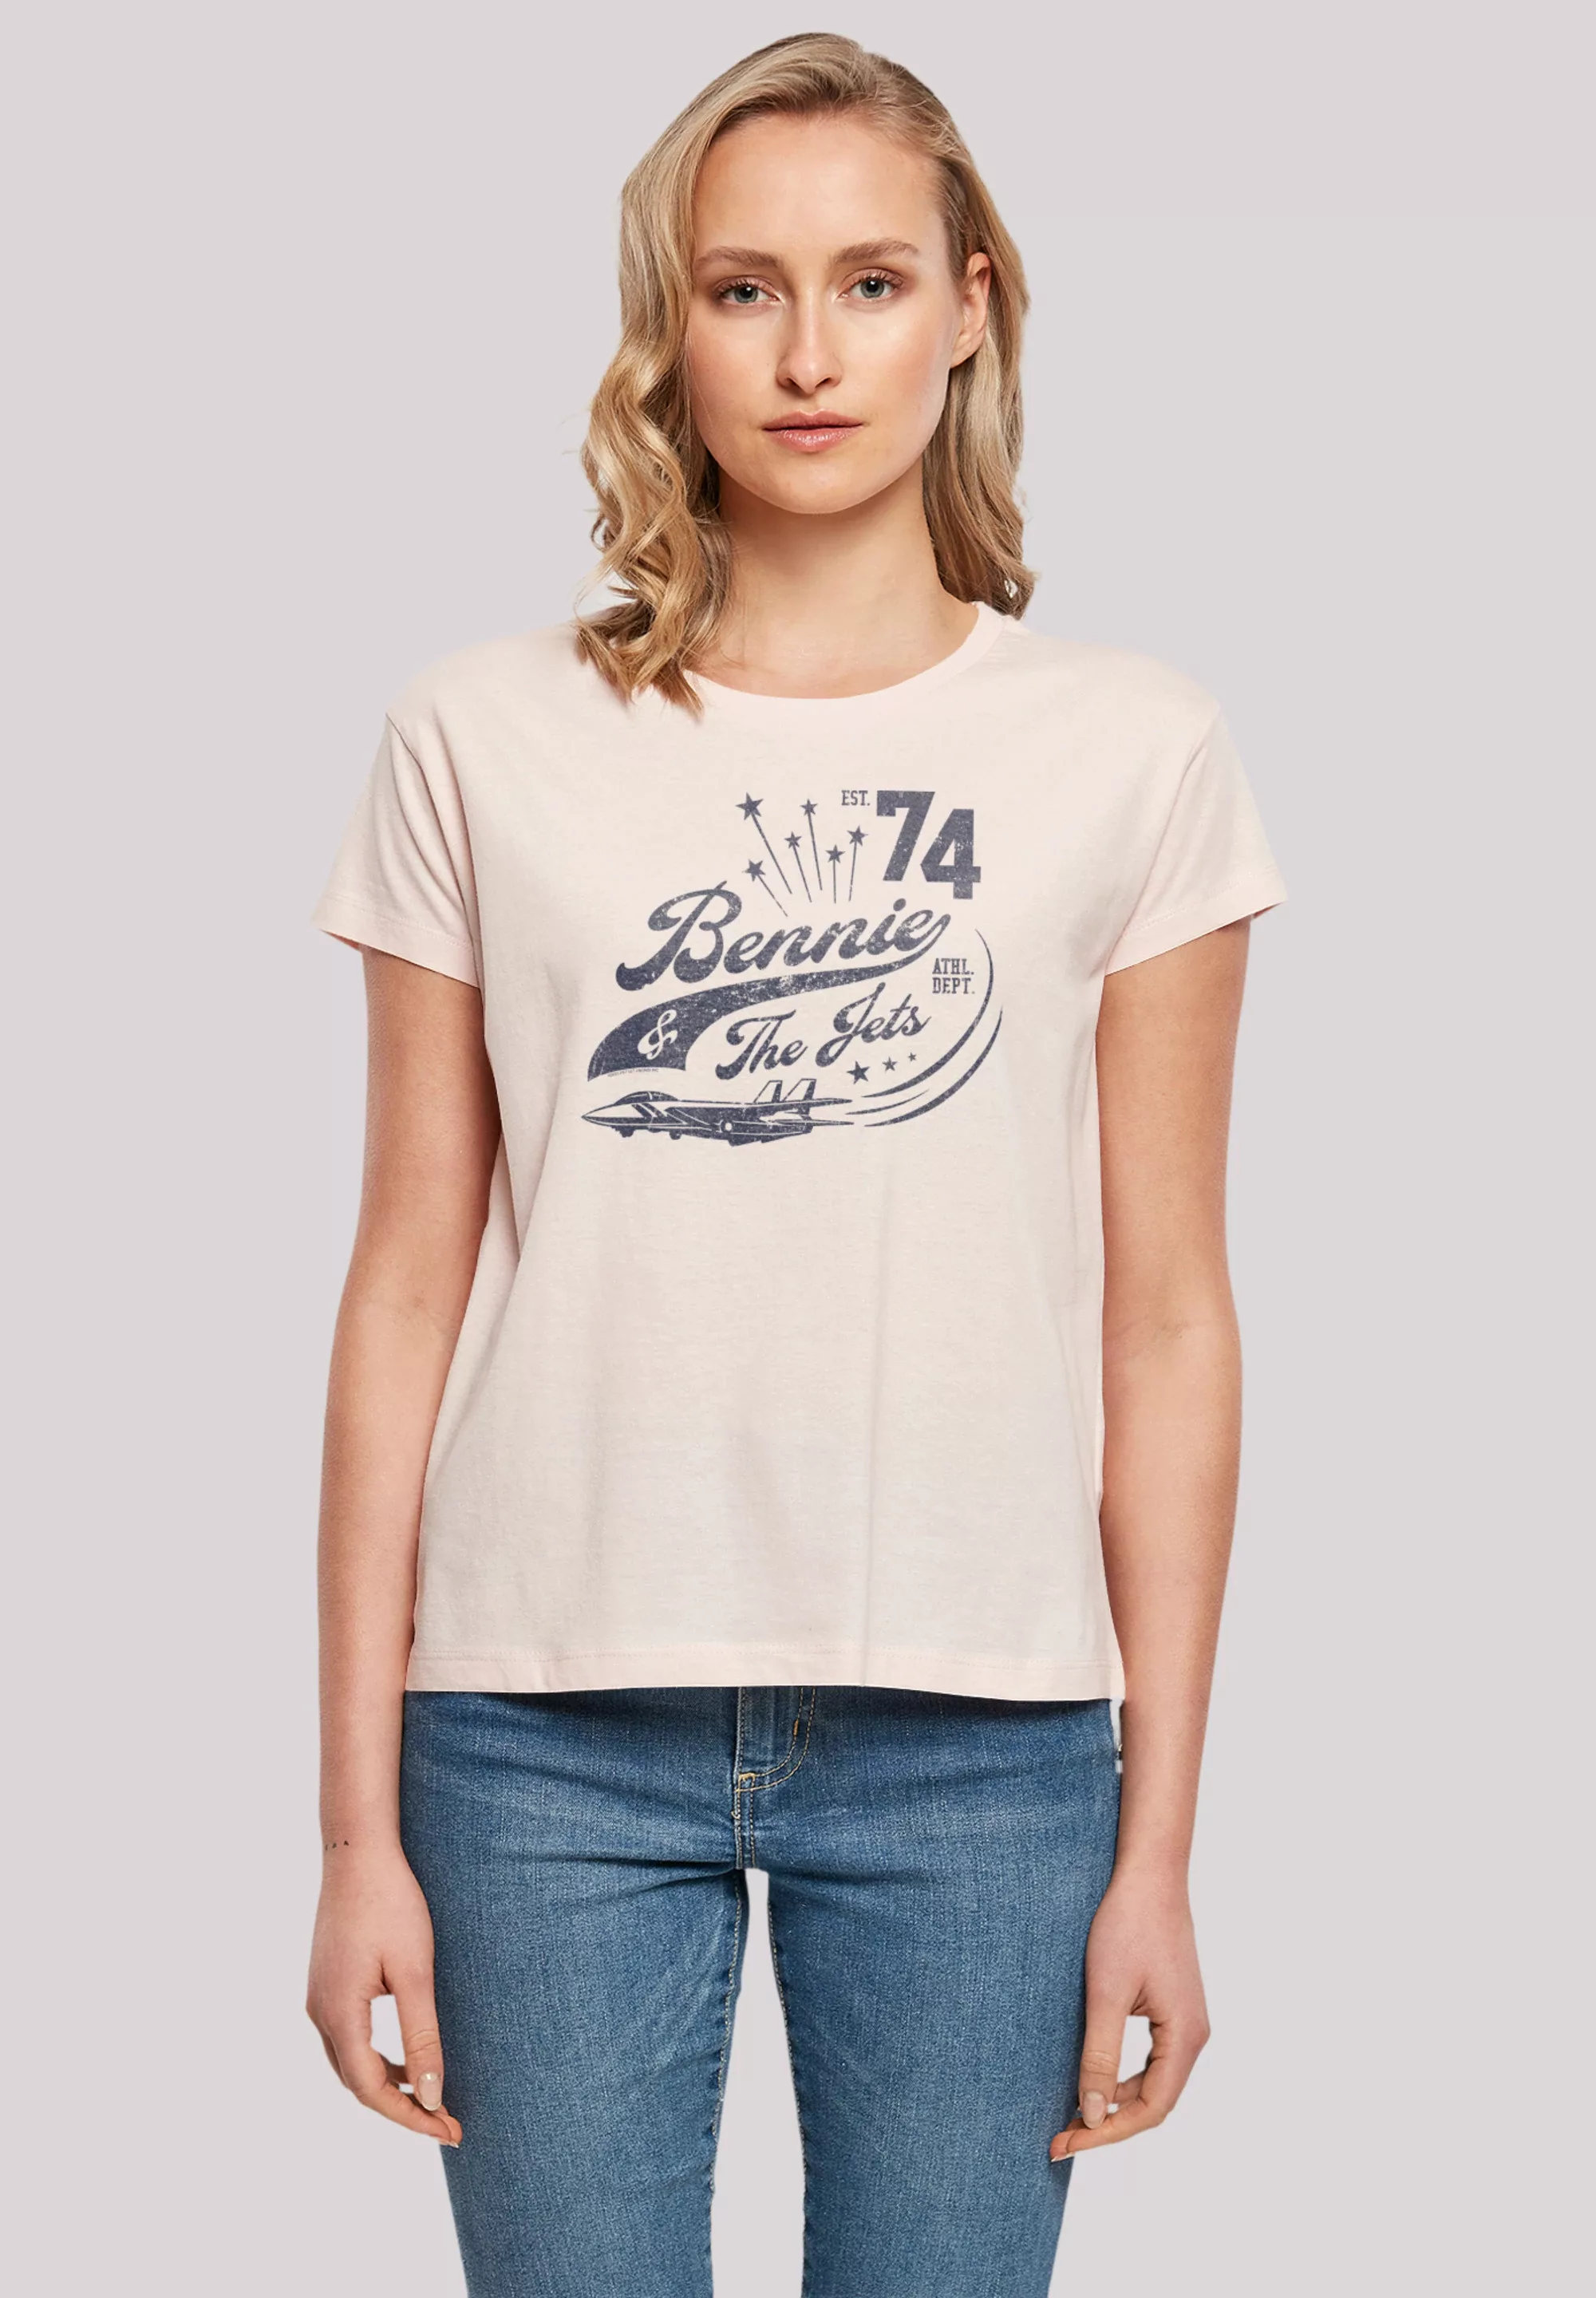 F4NT4STIC T-Shirt "Elton John Bennie And The Jets", Musik, Band, Logo günstig online kaufen